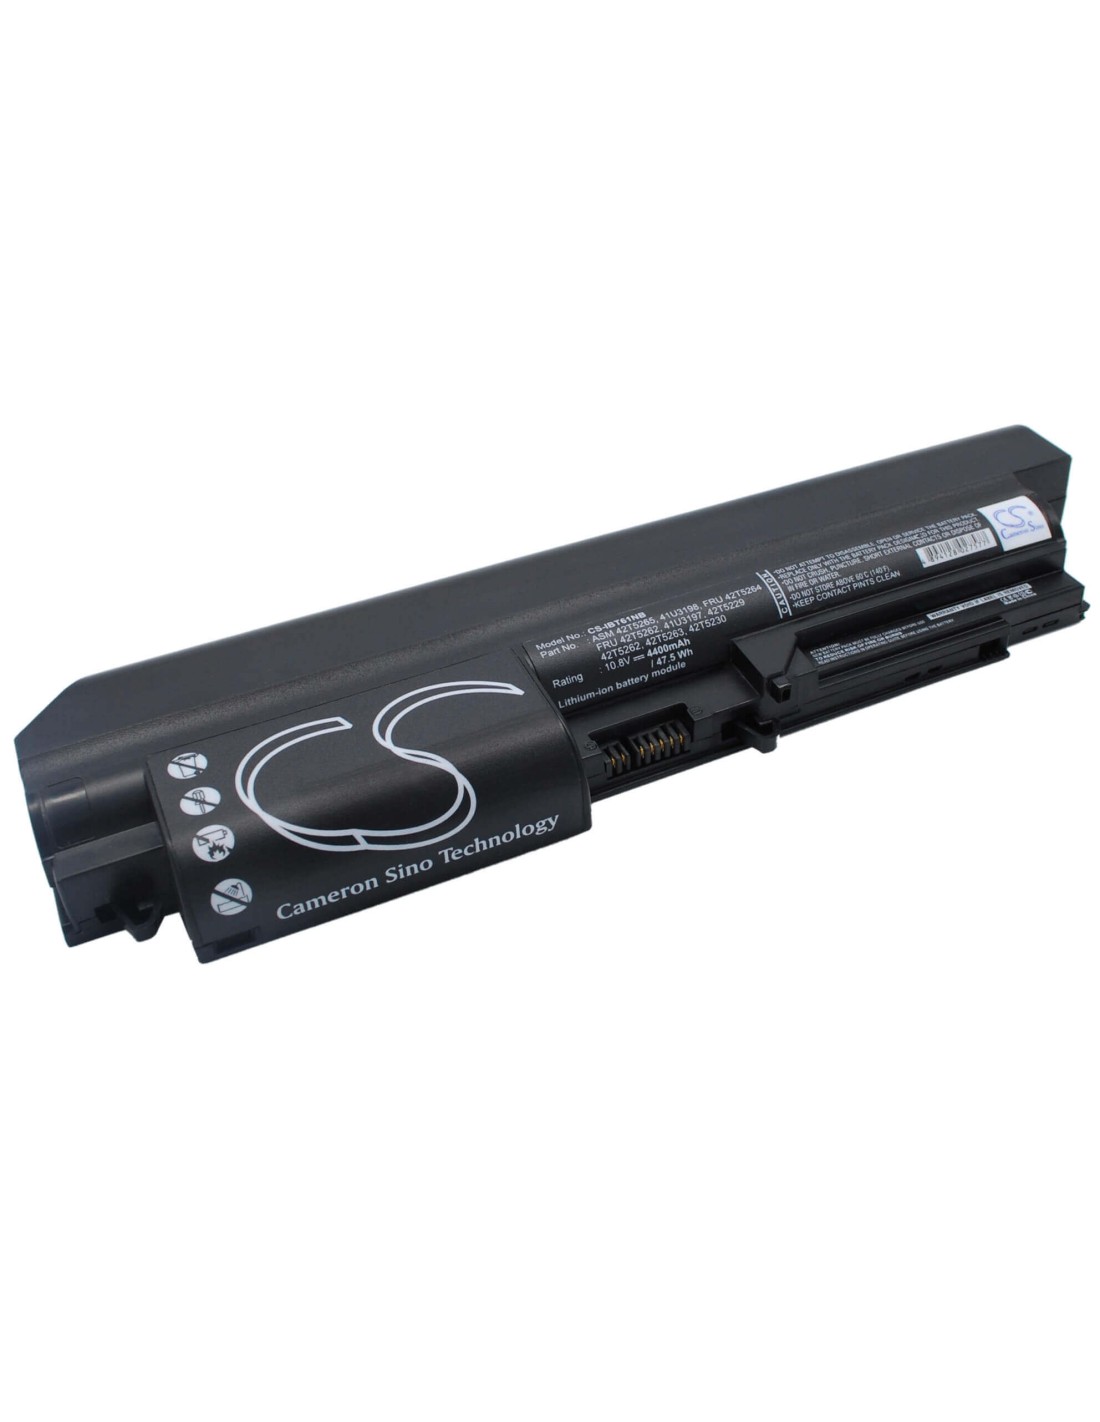 Black Battery for Ibm Thinkpad T61 7659, Thinkpad T400 2764, Thinkpad T61 6480 10.8V, 4400mAh - 47.52Wh